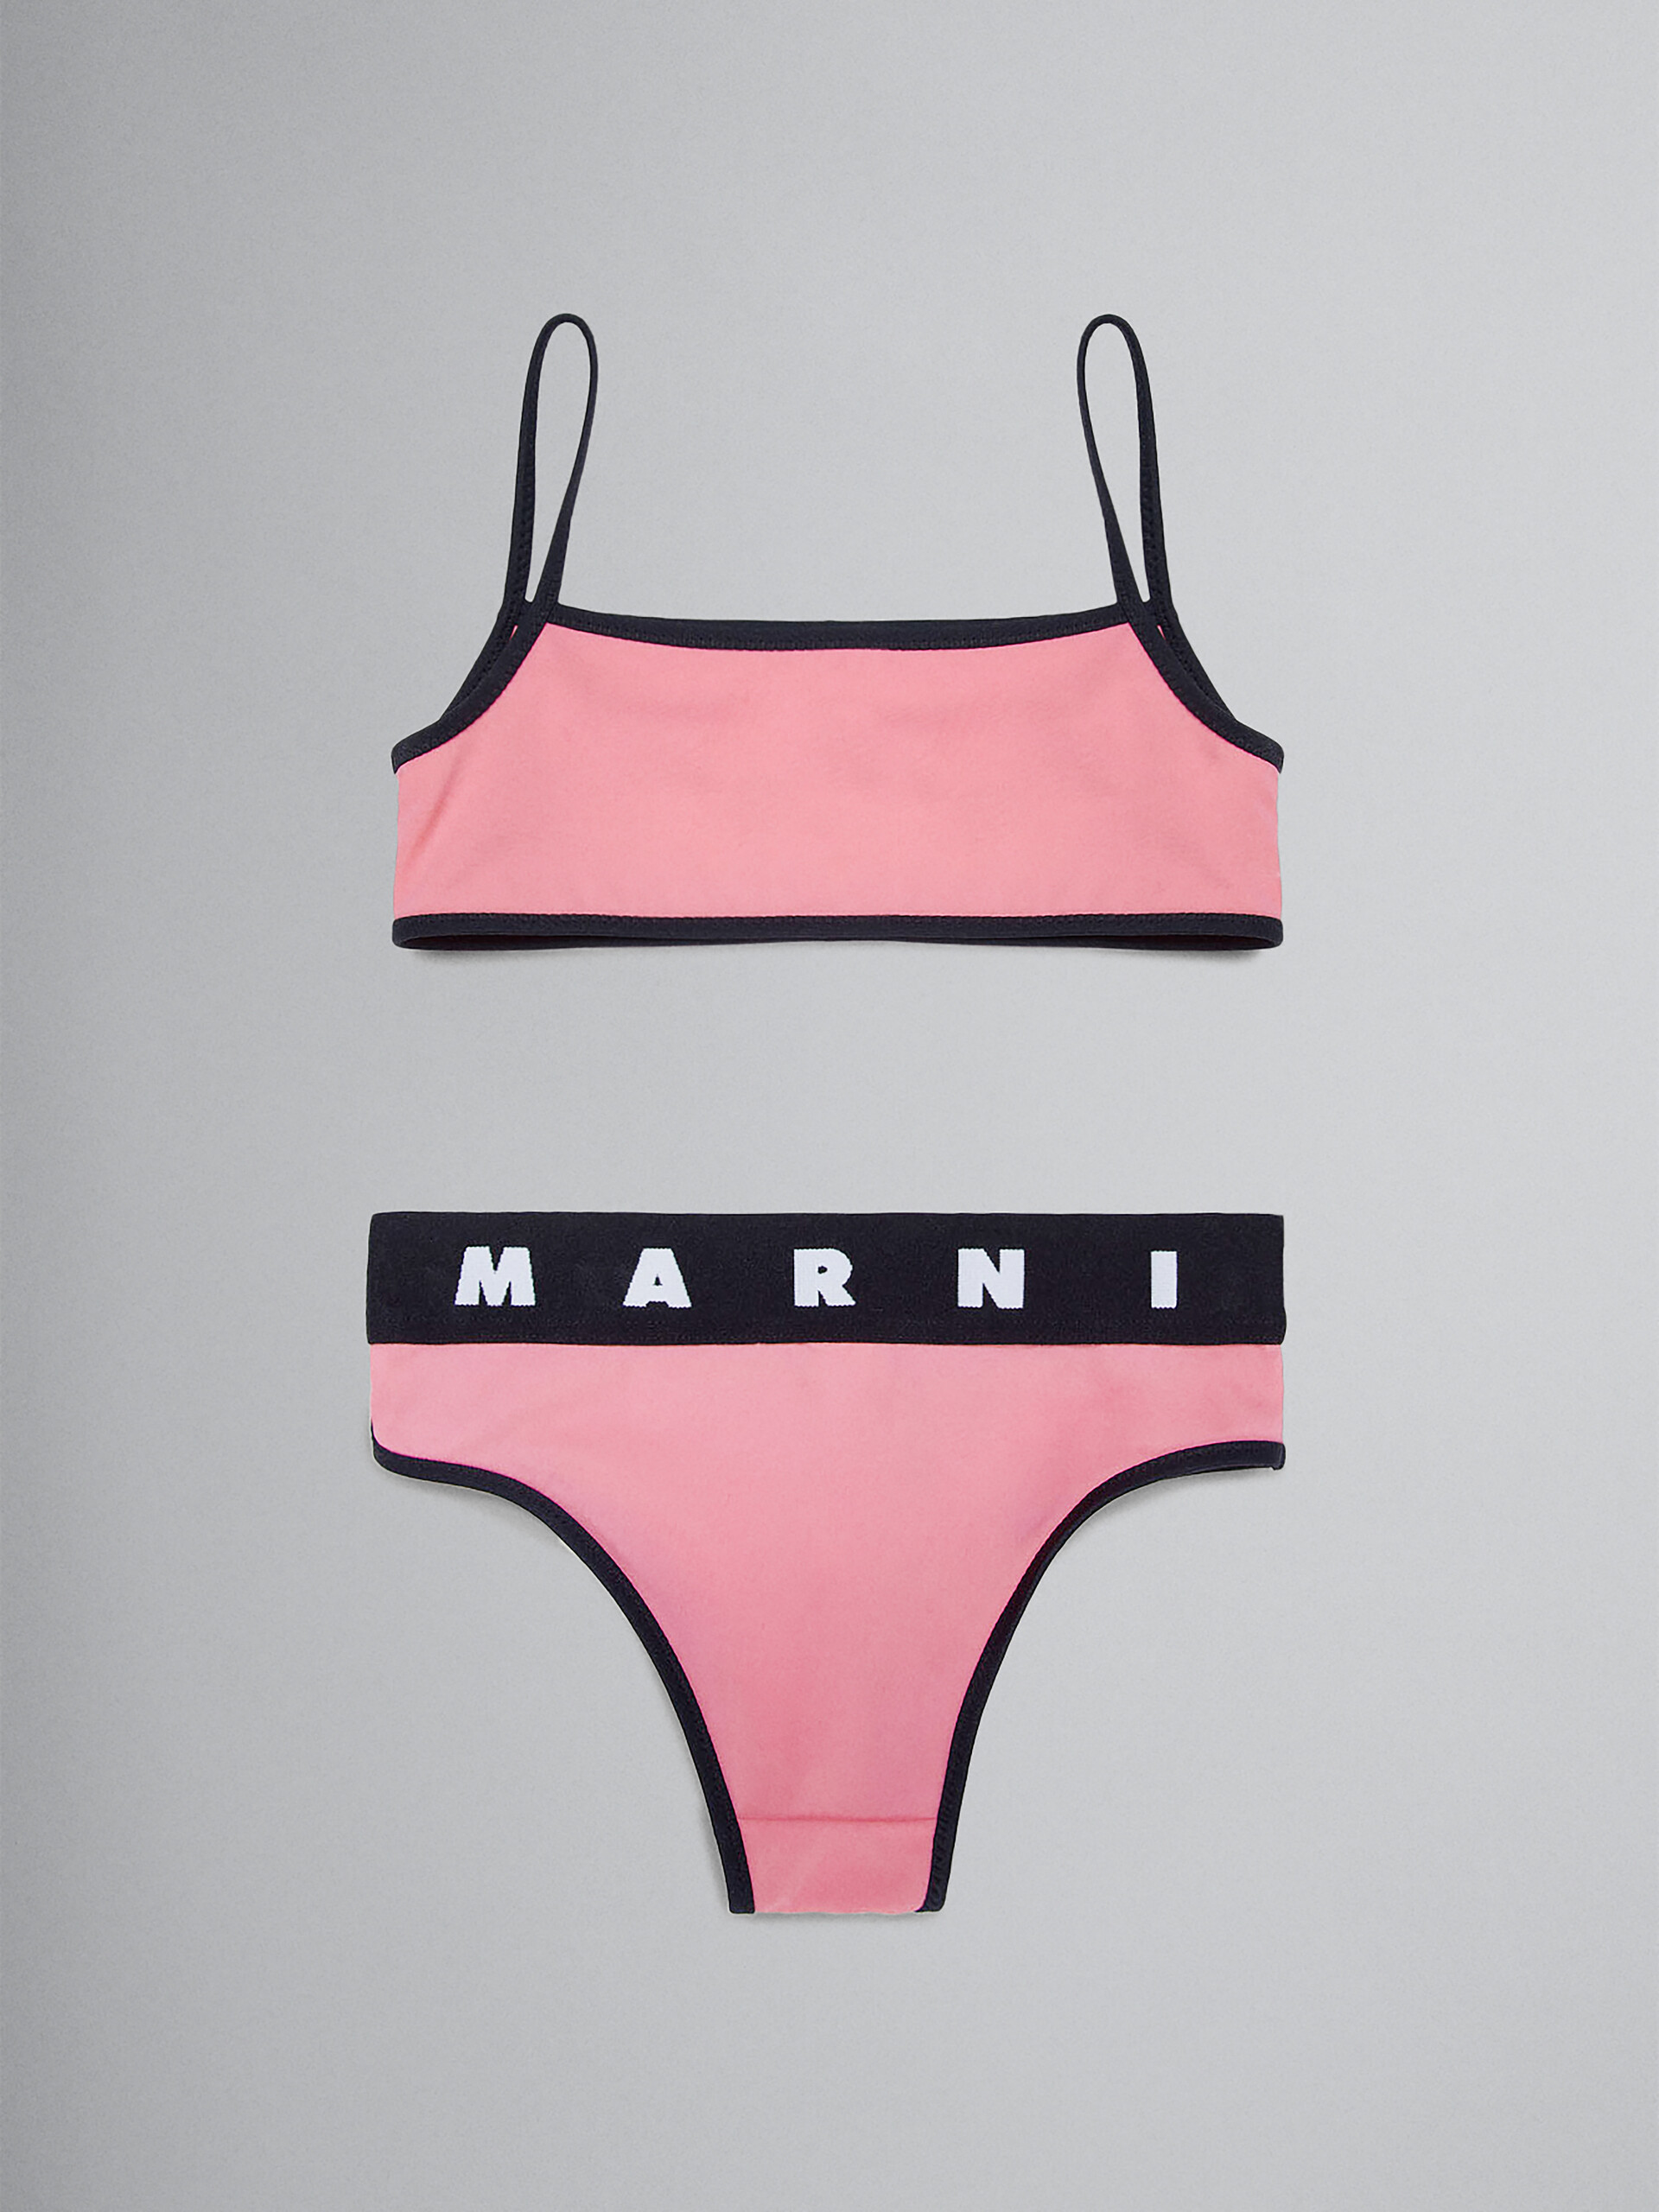 Pinker Bikini mit Logo - Badekleidung - Image 2